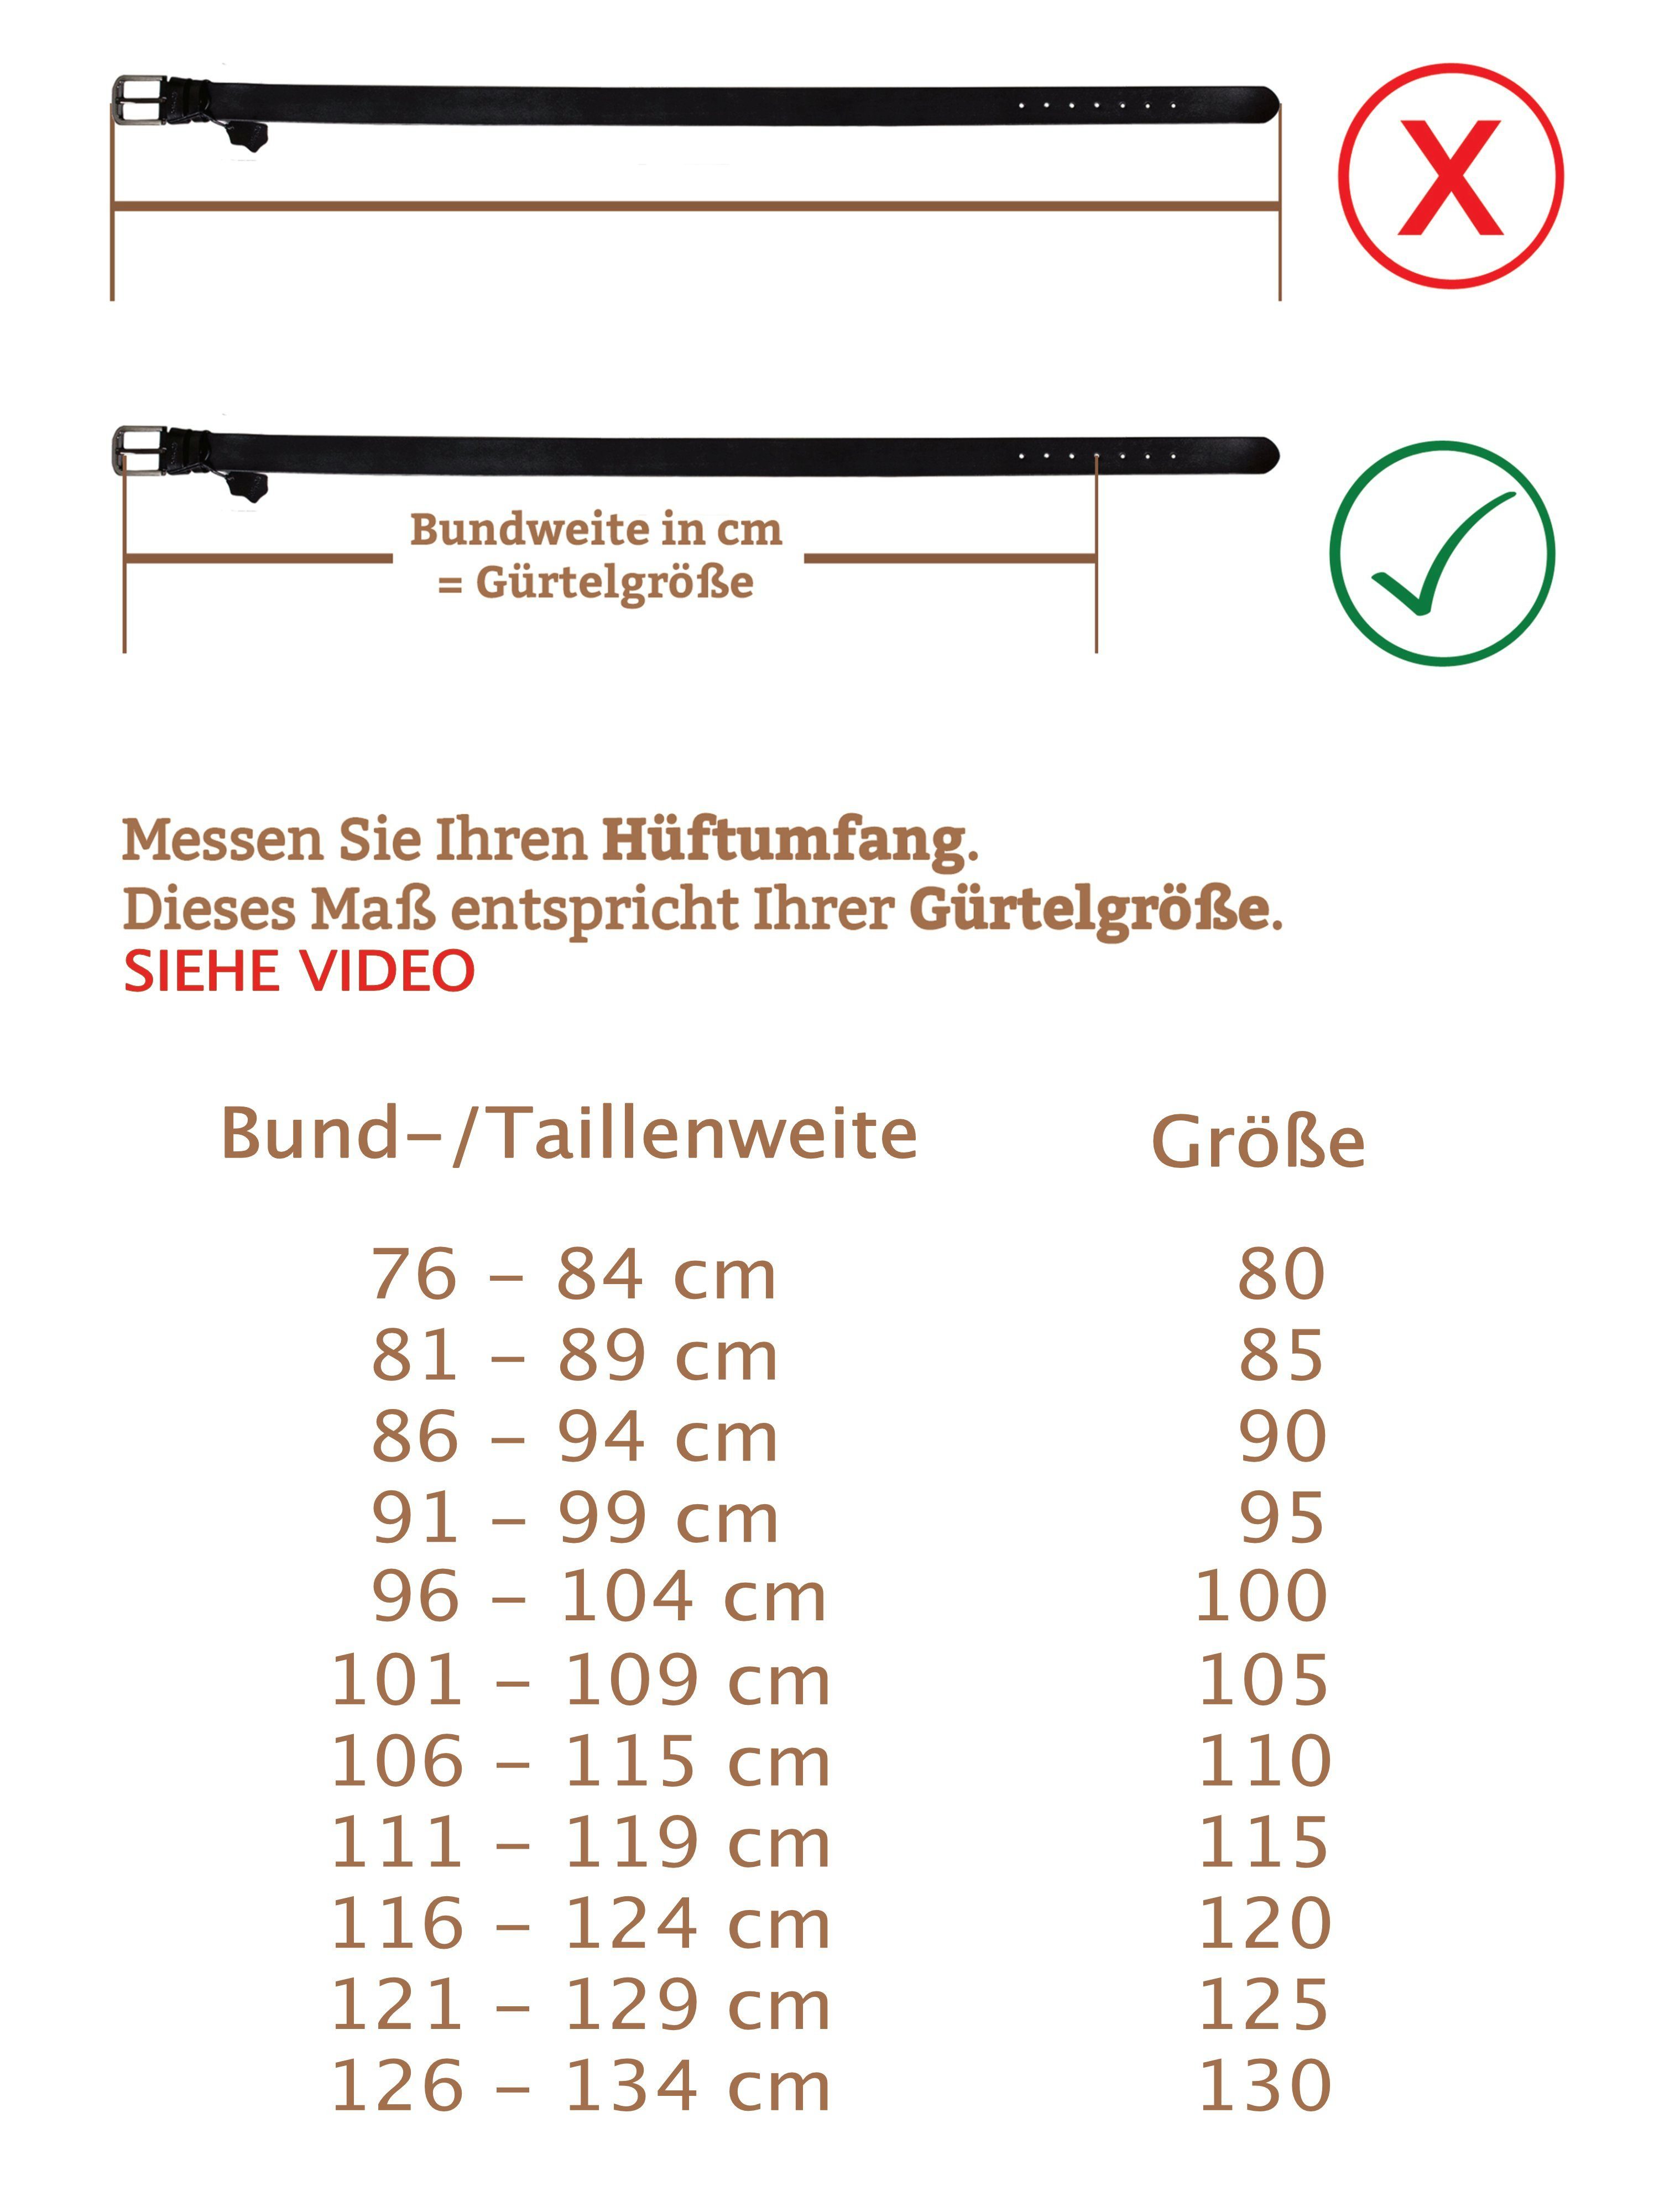 Cartvelli Schwarz Ledergürtel inkl. 40mm gegerbt Ledergürtel Cartvelli Vollleder in Germany umweltfreundlich Made Herren Geschenkbox